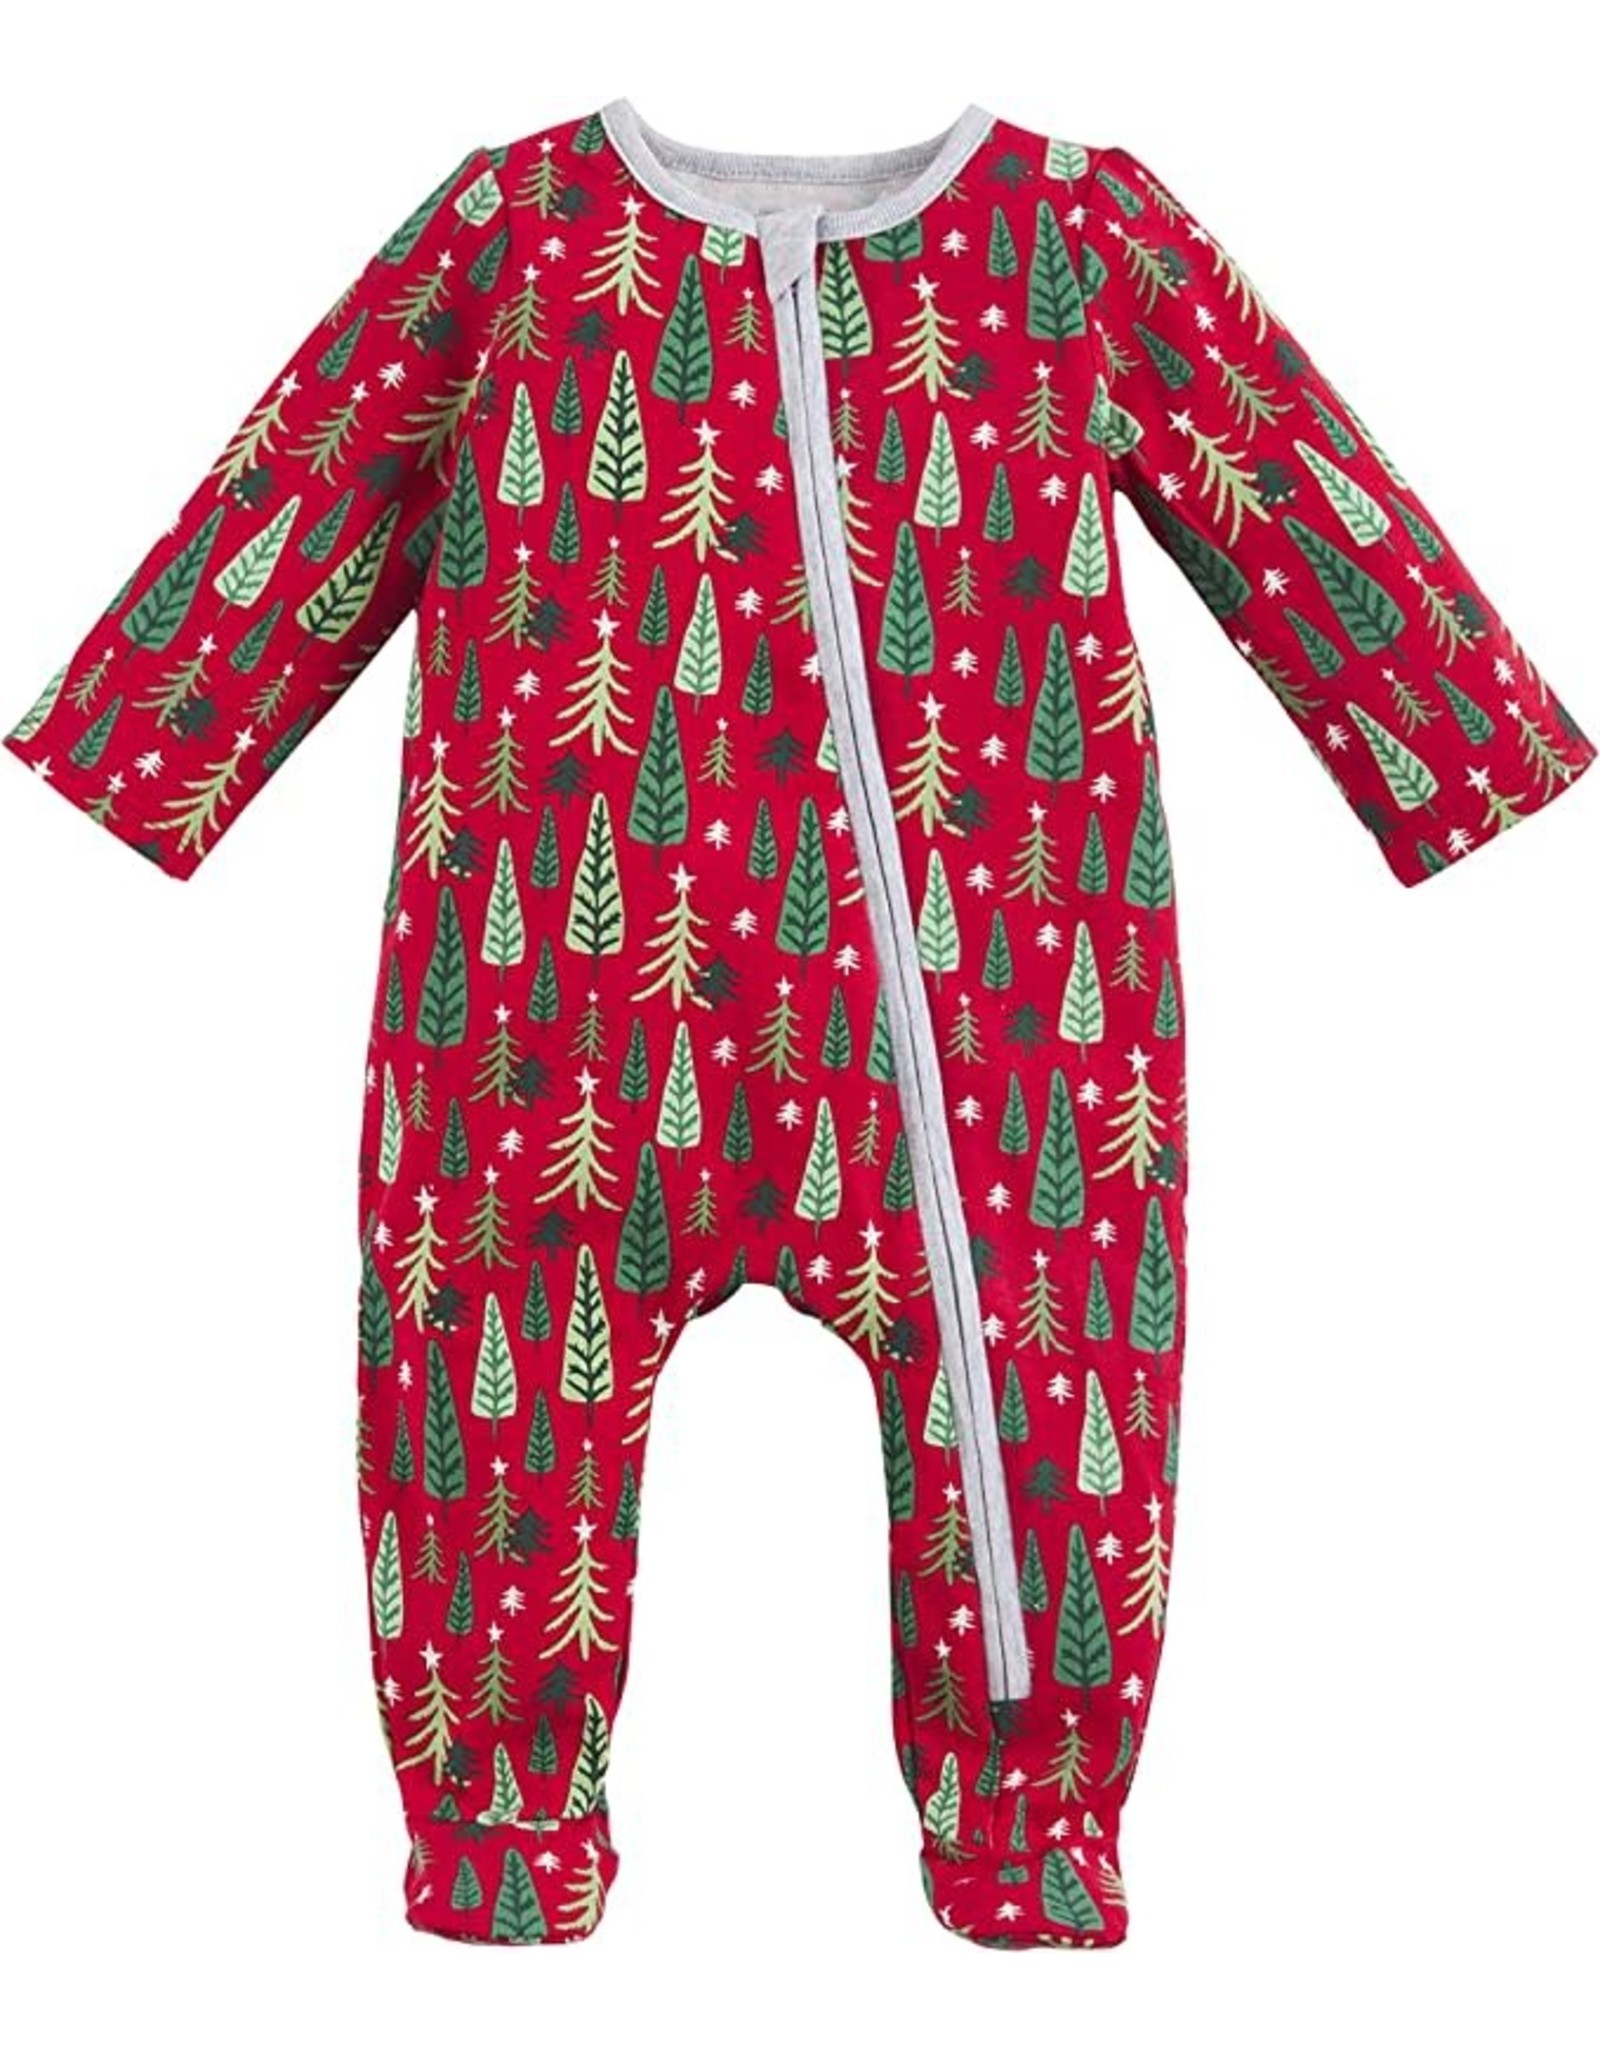 Mud Pie Christmas Sleepwear Family Pajamas 2pc Set Infant Sleeper 0-3M